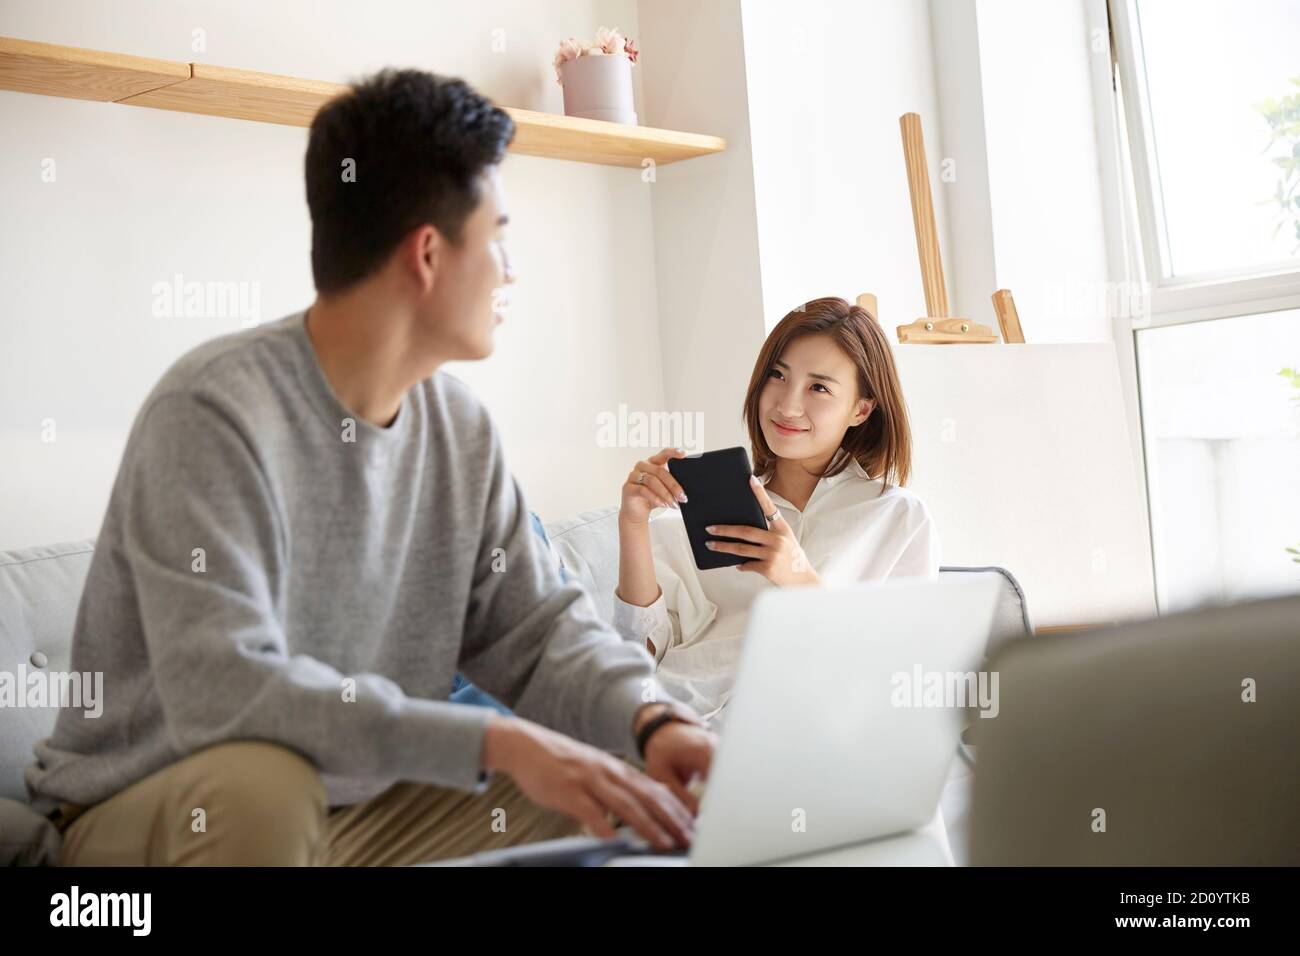 Glücklich und entspannt junge asiatische Pärchen chattet während des Aufenthalts Zu Hause Stockfoto